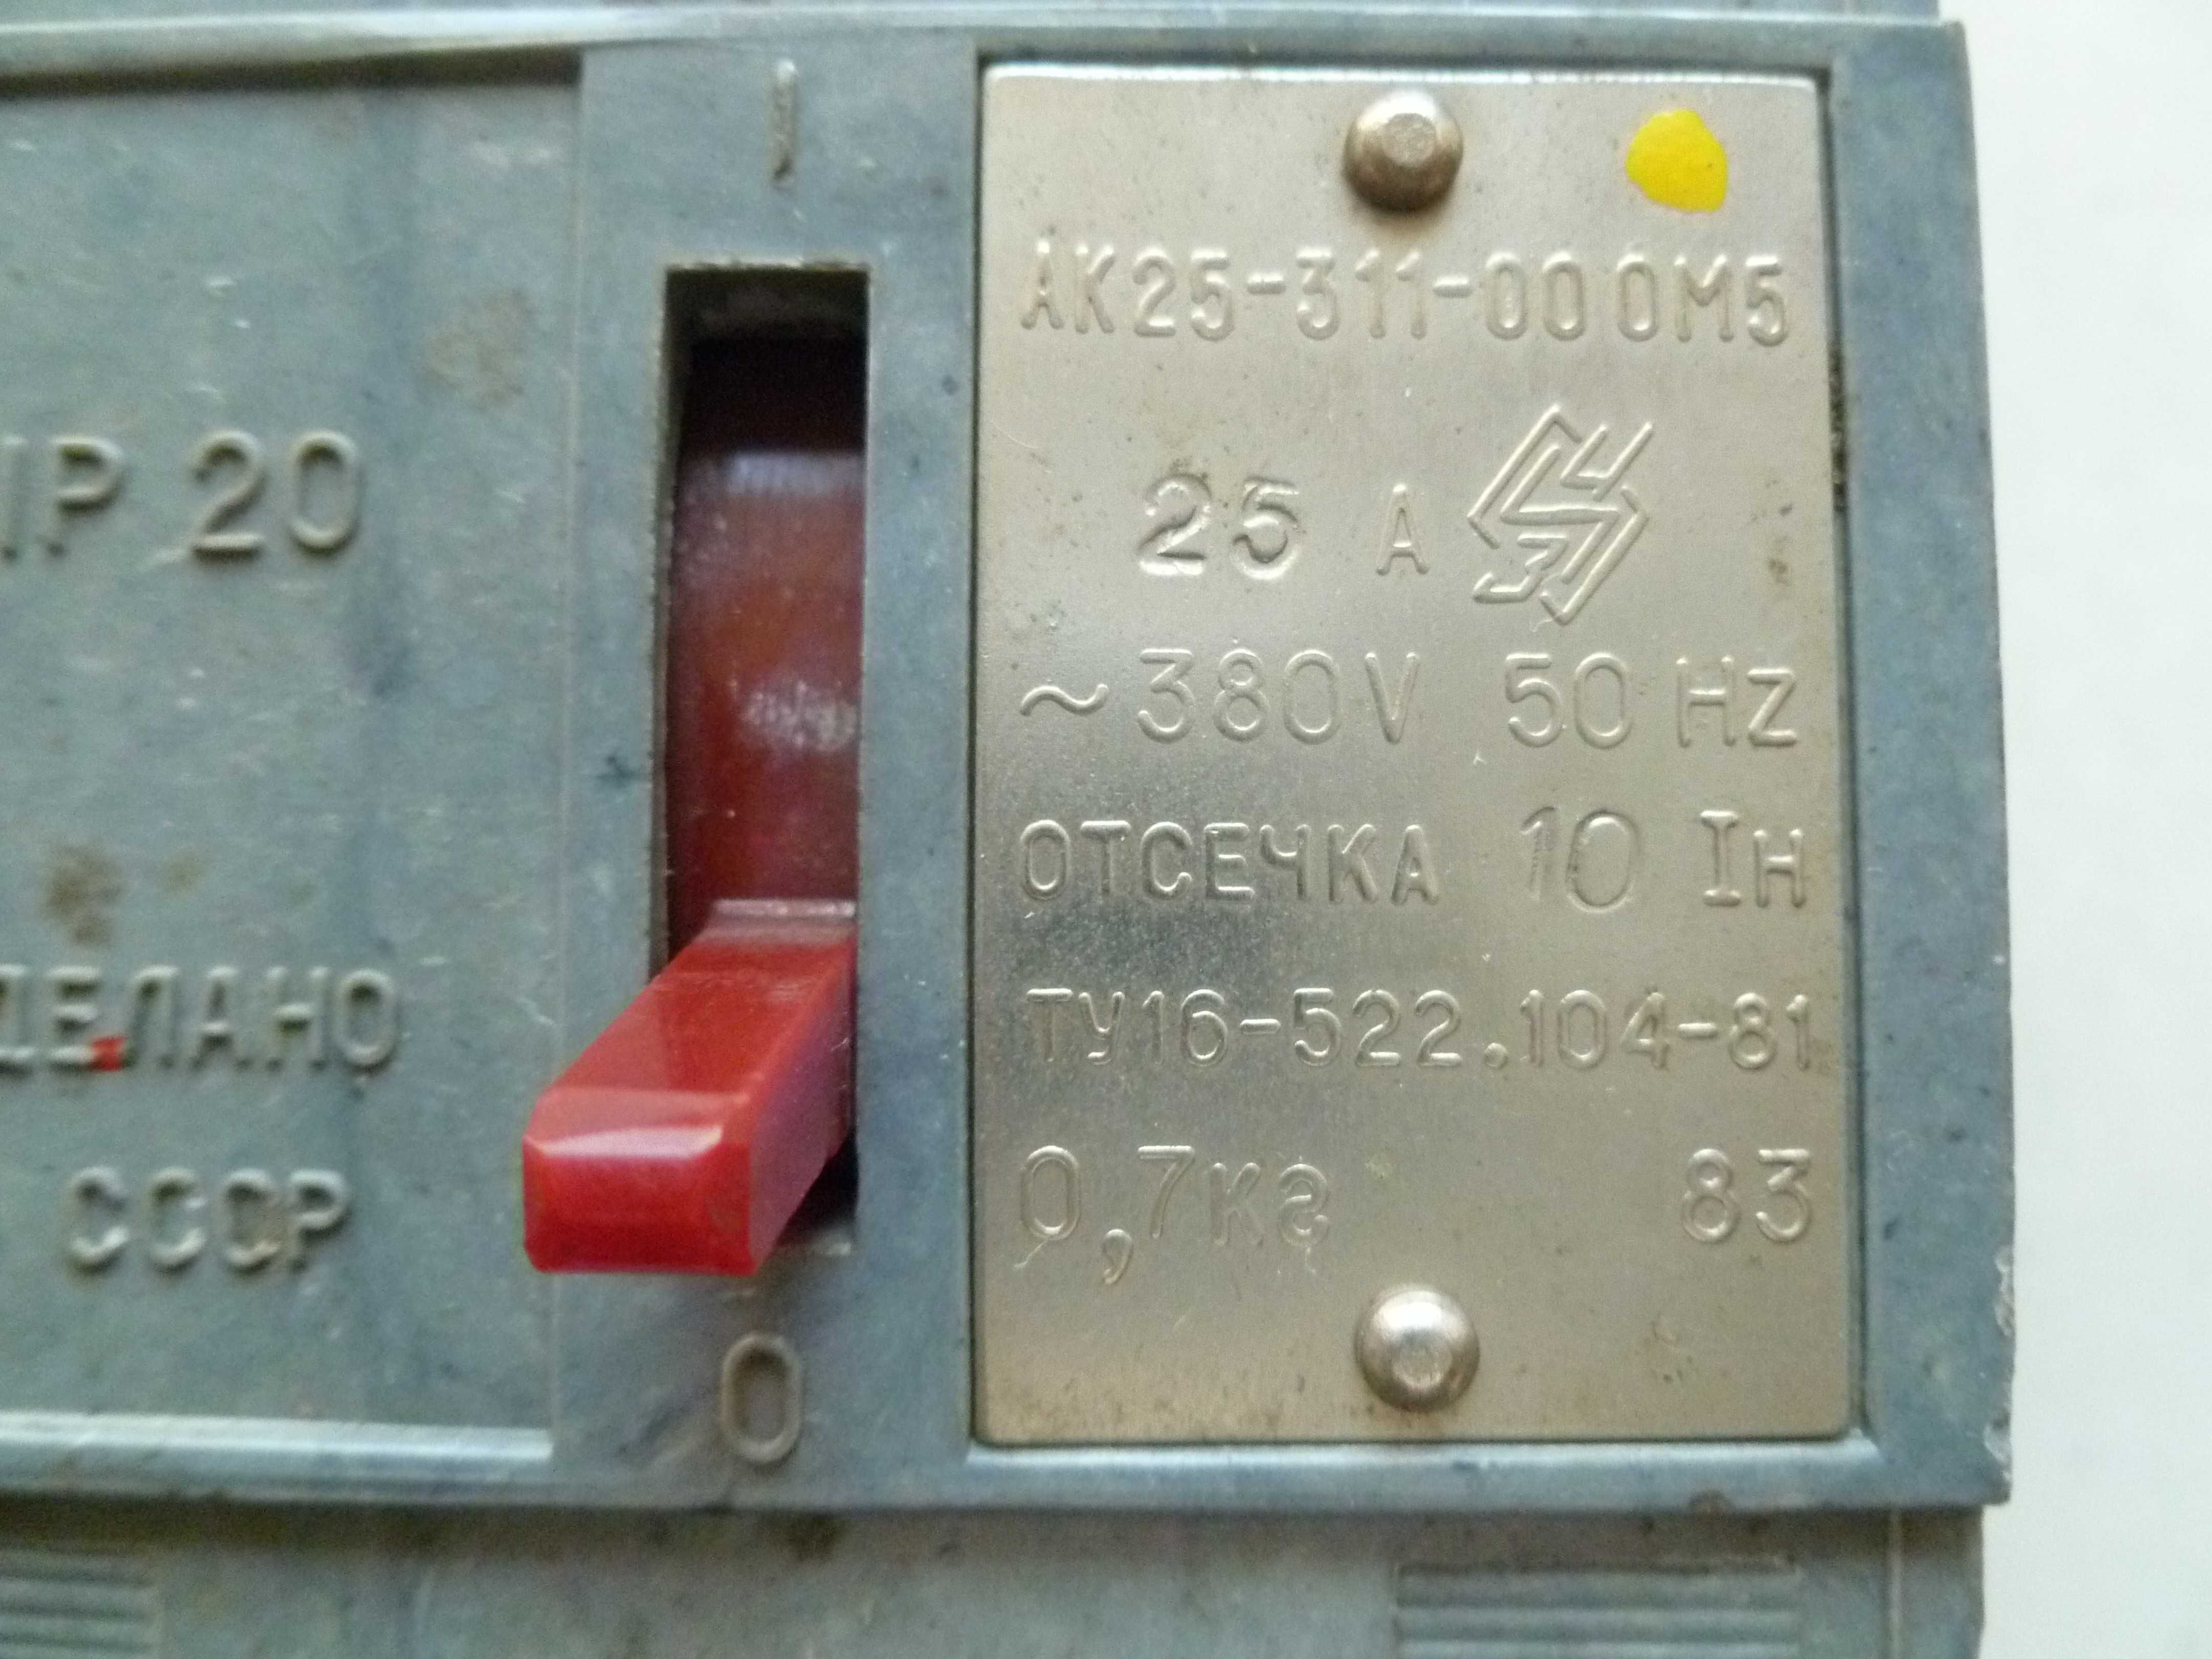 Автоматический выключатель АК25-311-00 ОМ5 СССР